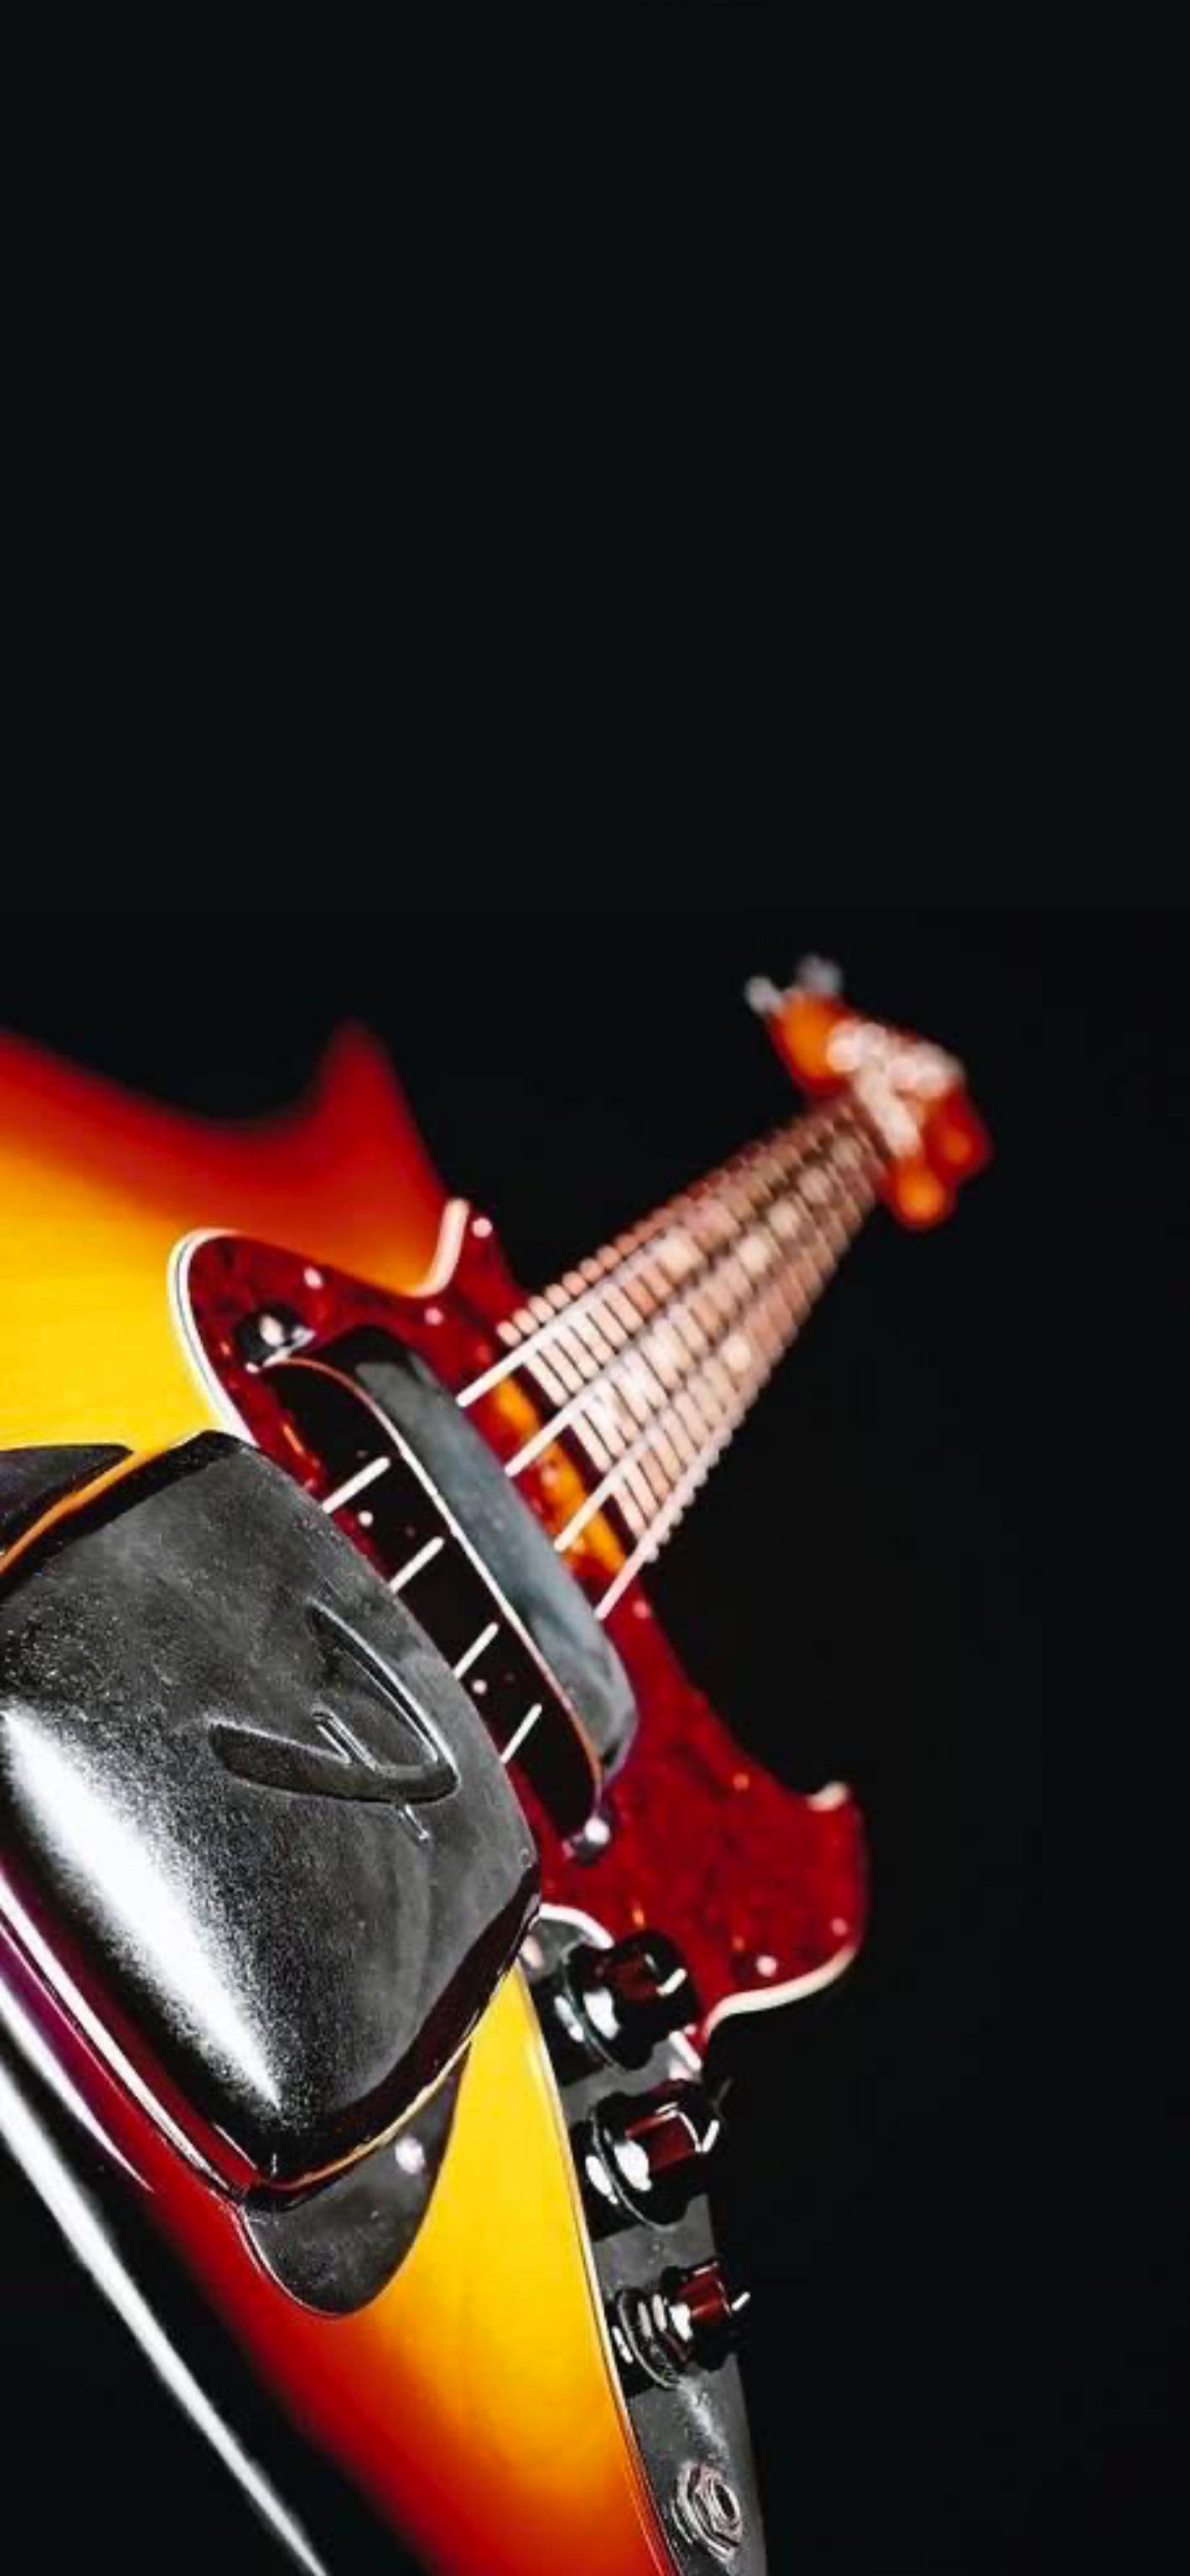 Fender Bass Guitar Wallpapers - Top Free Fender Bass Guitar Backgrounds ...